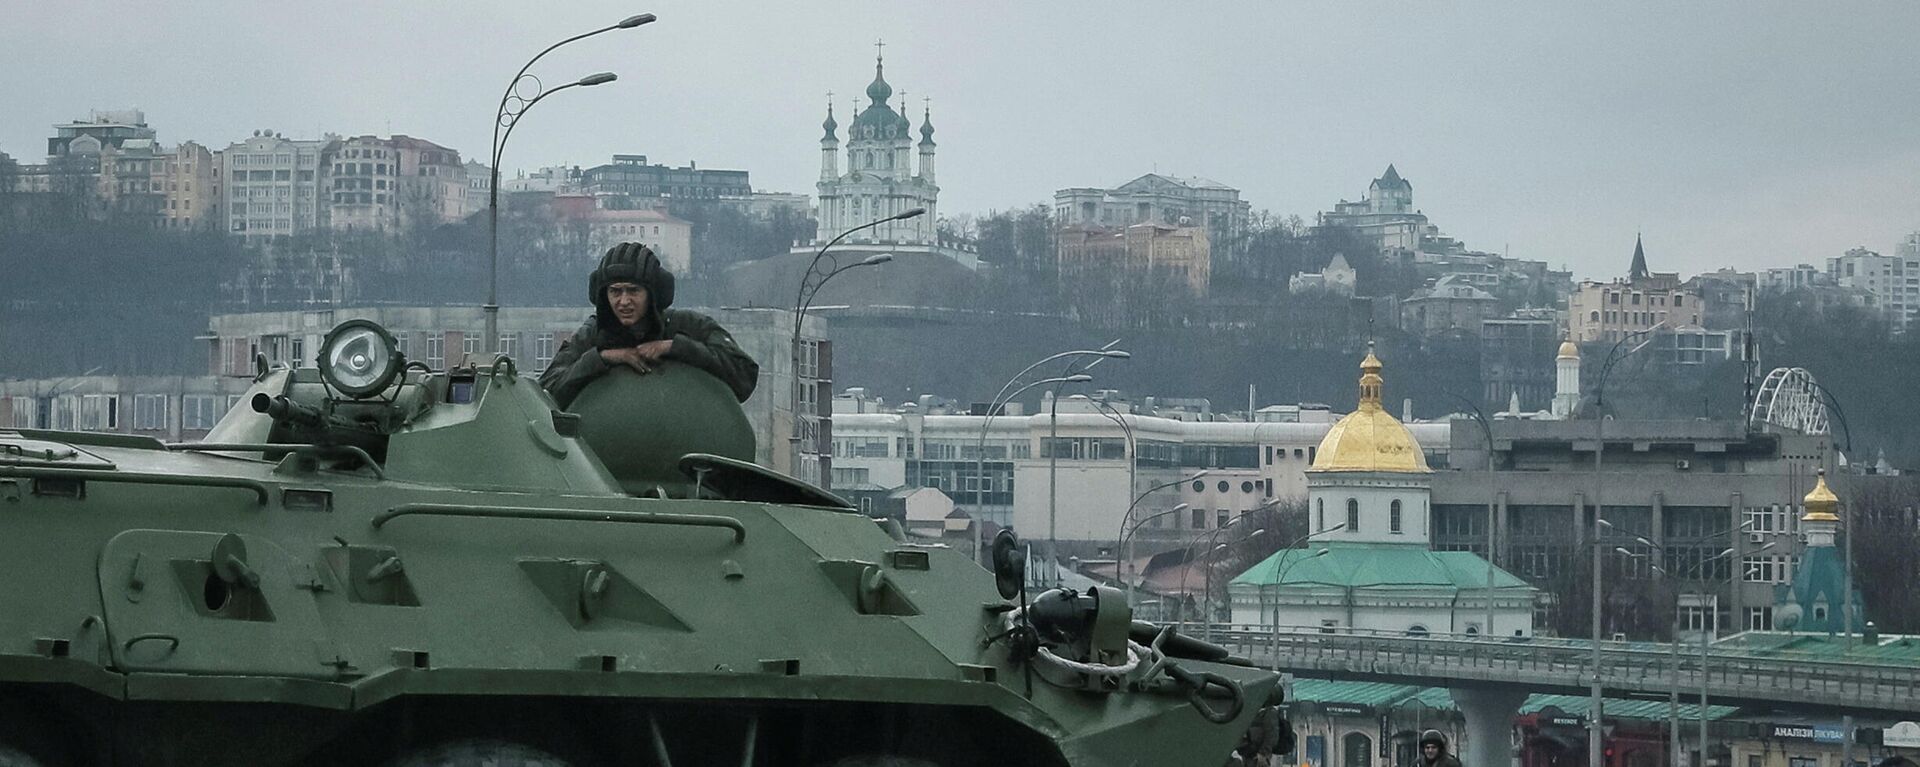 Украинские военнослужащие на мосту в Киеве, 25 февраля 2022 года - Sputnik Latvija, 1920, 21.03.2022